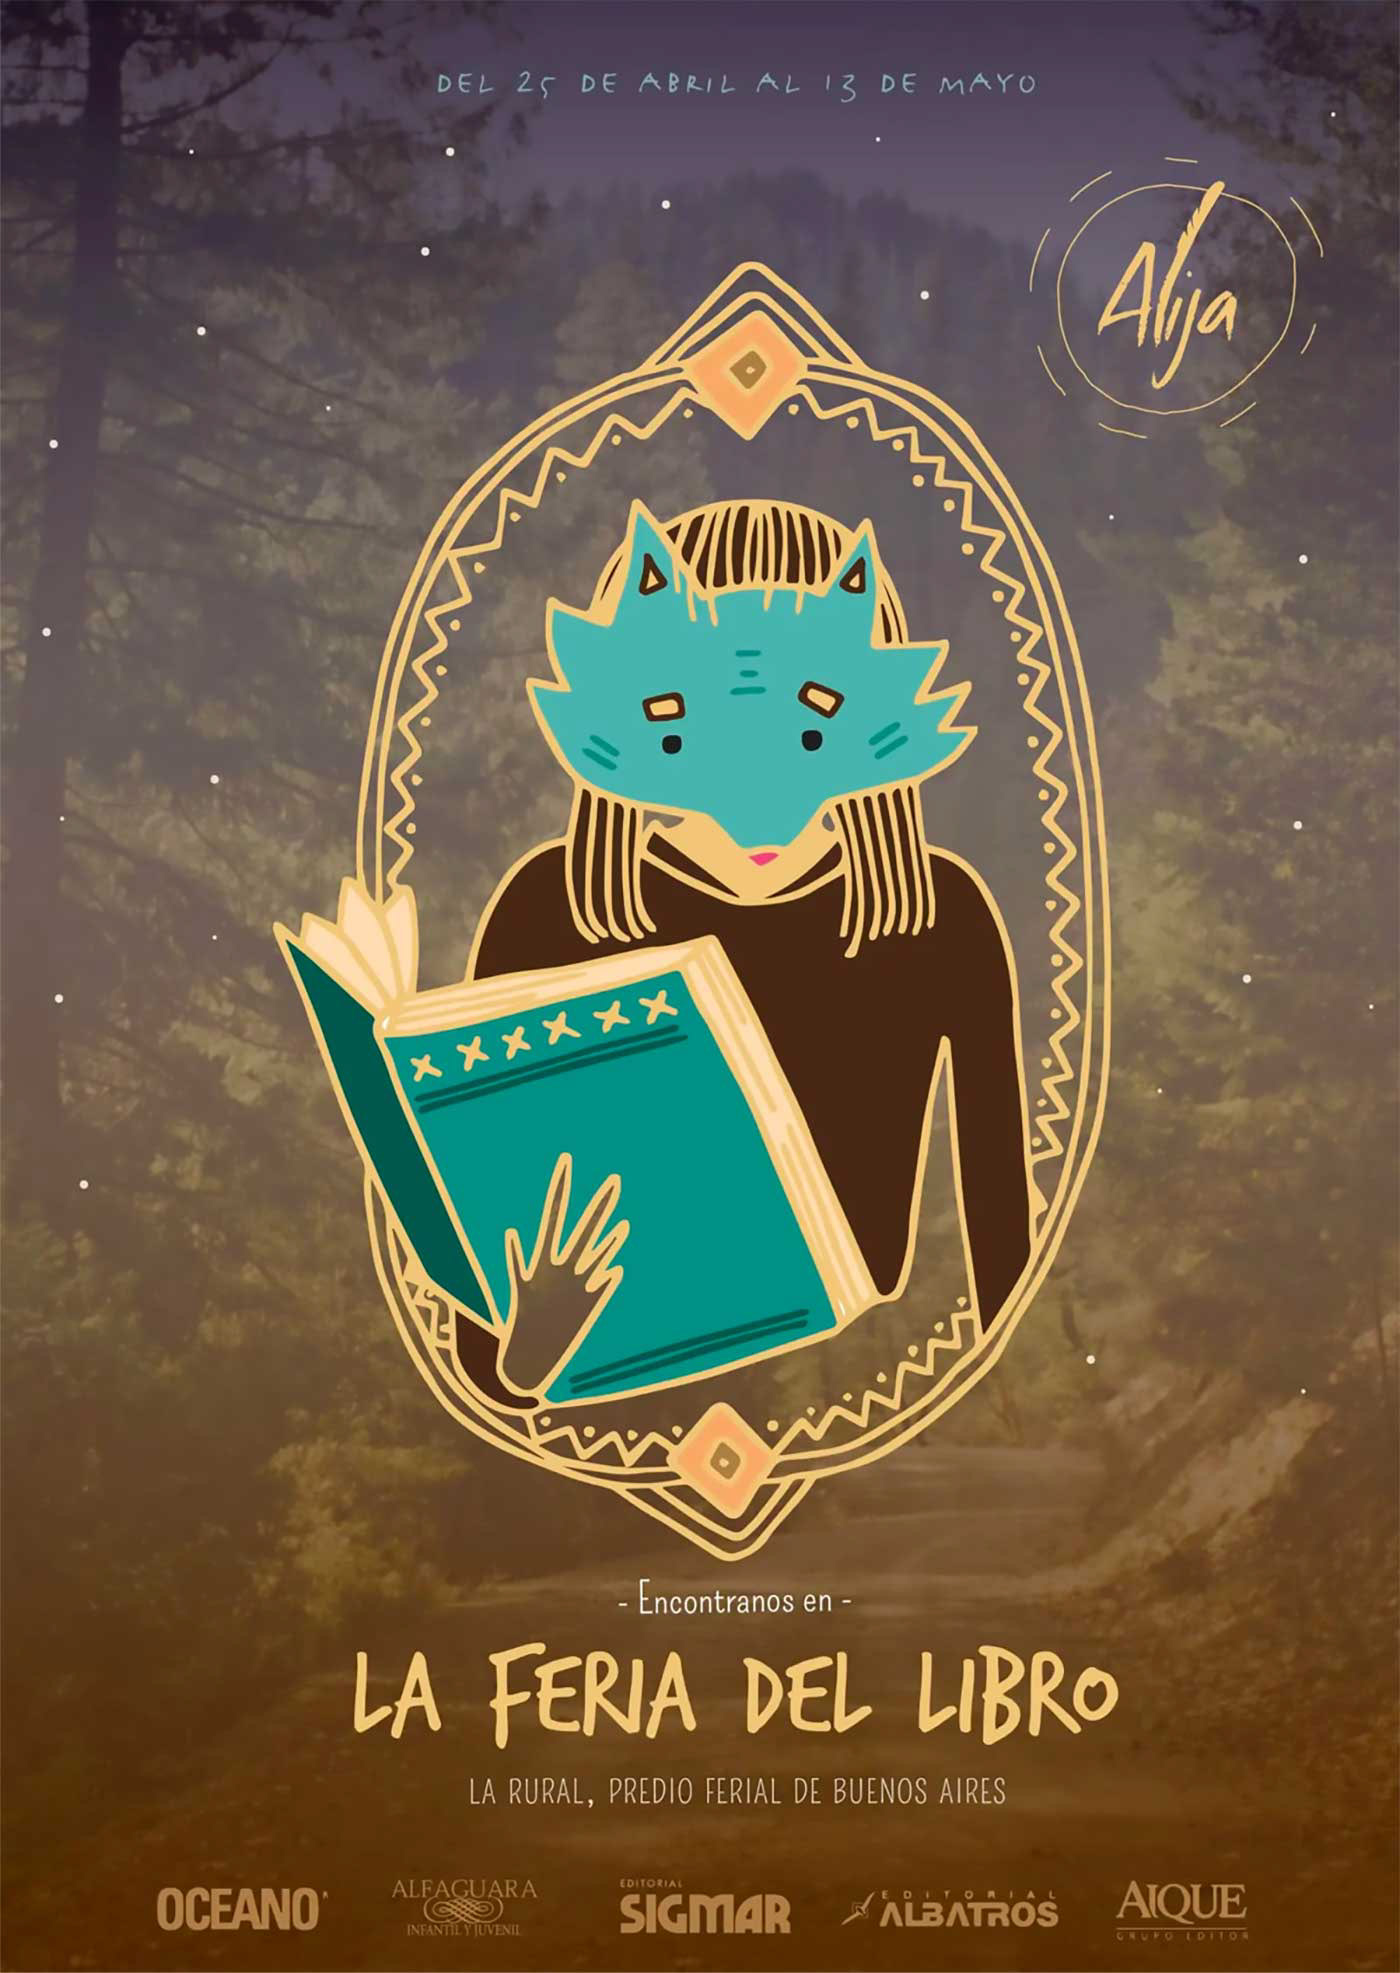 Alija Book Fair Cartel Design Argentina Feria del Libro 